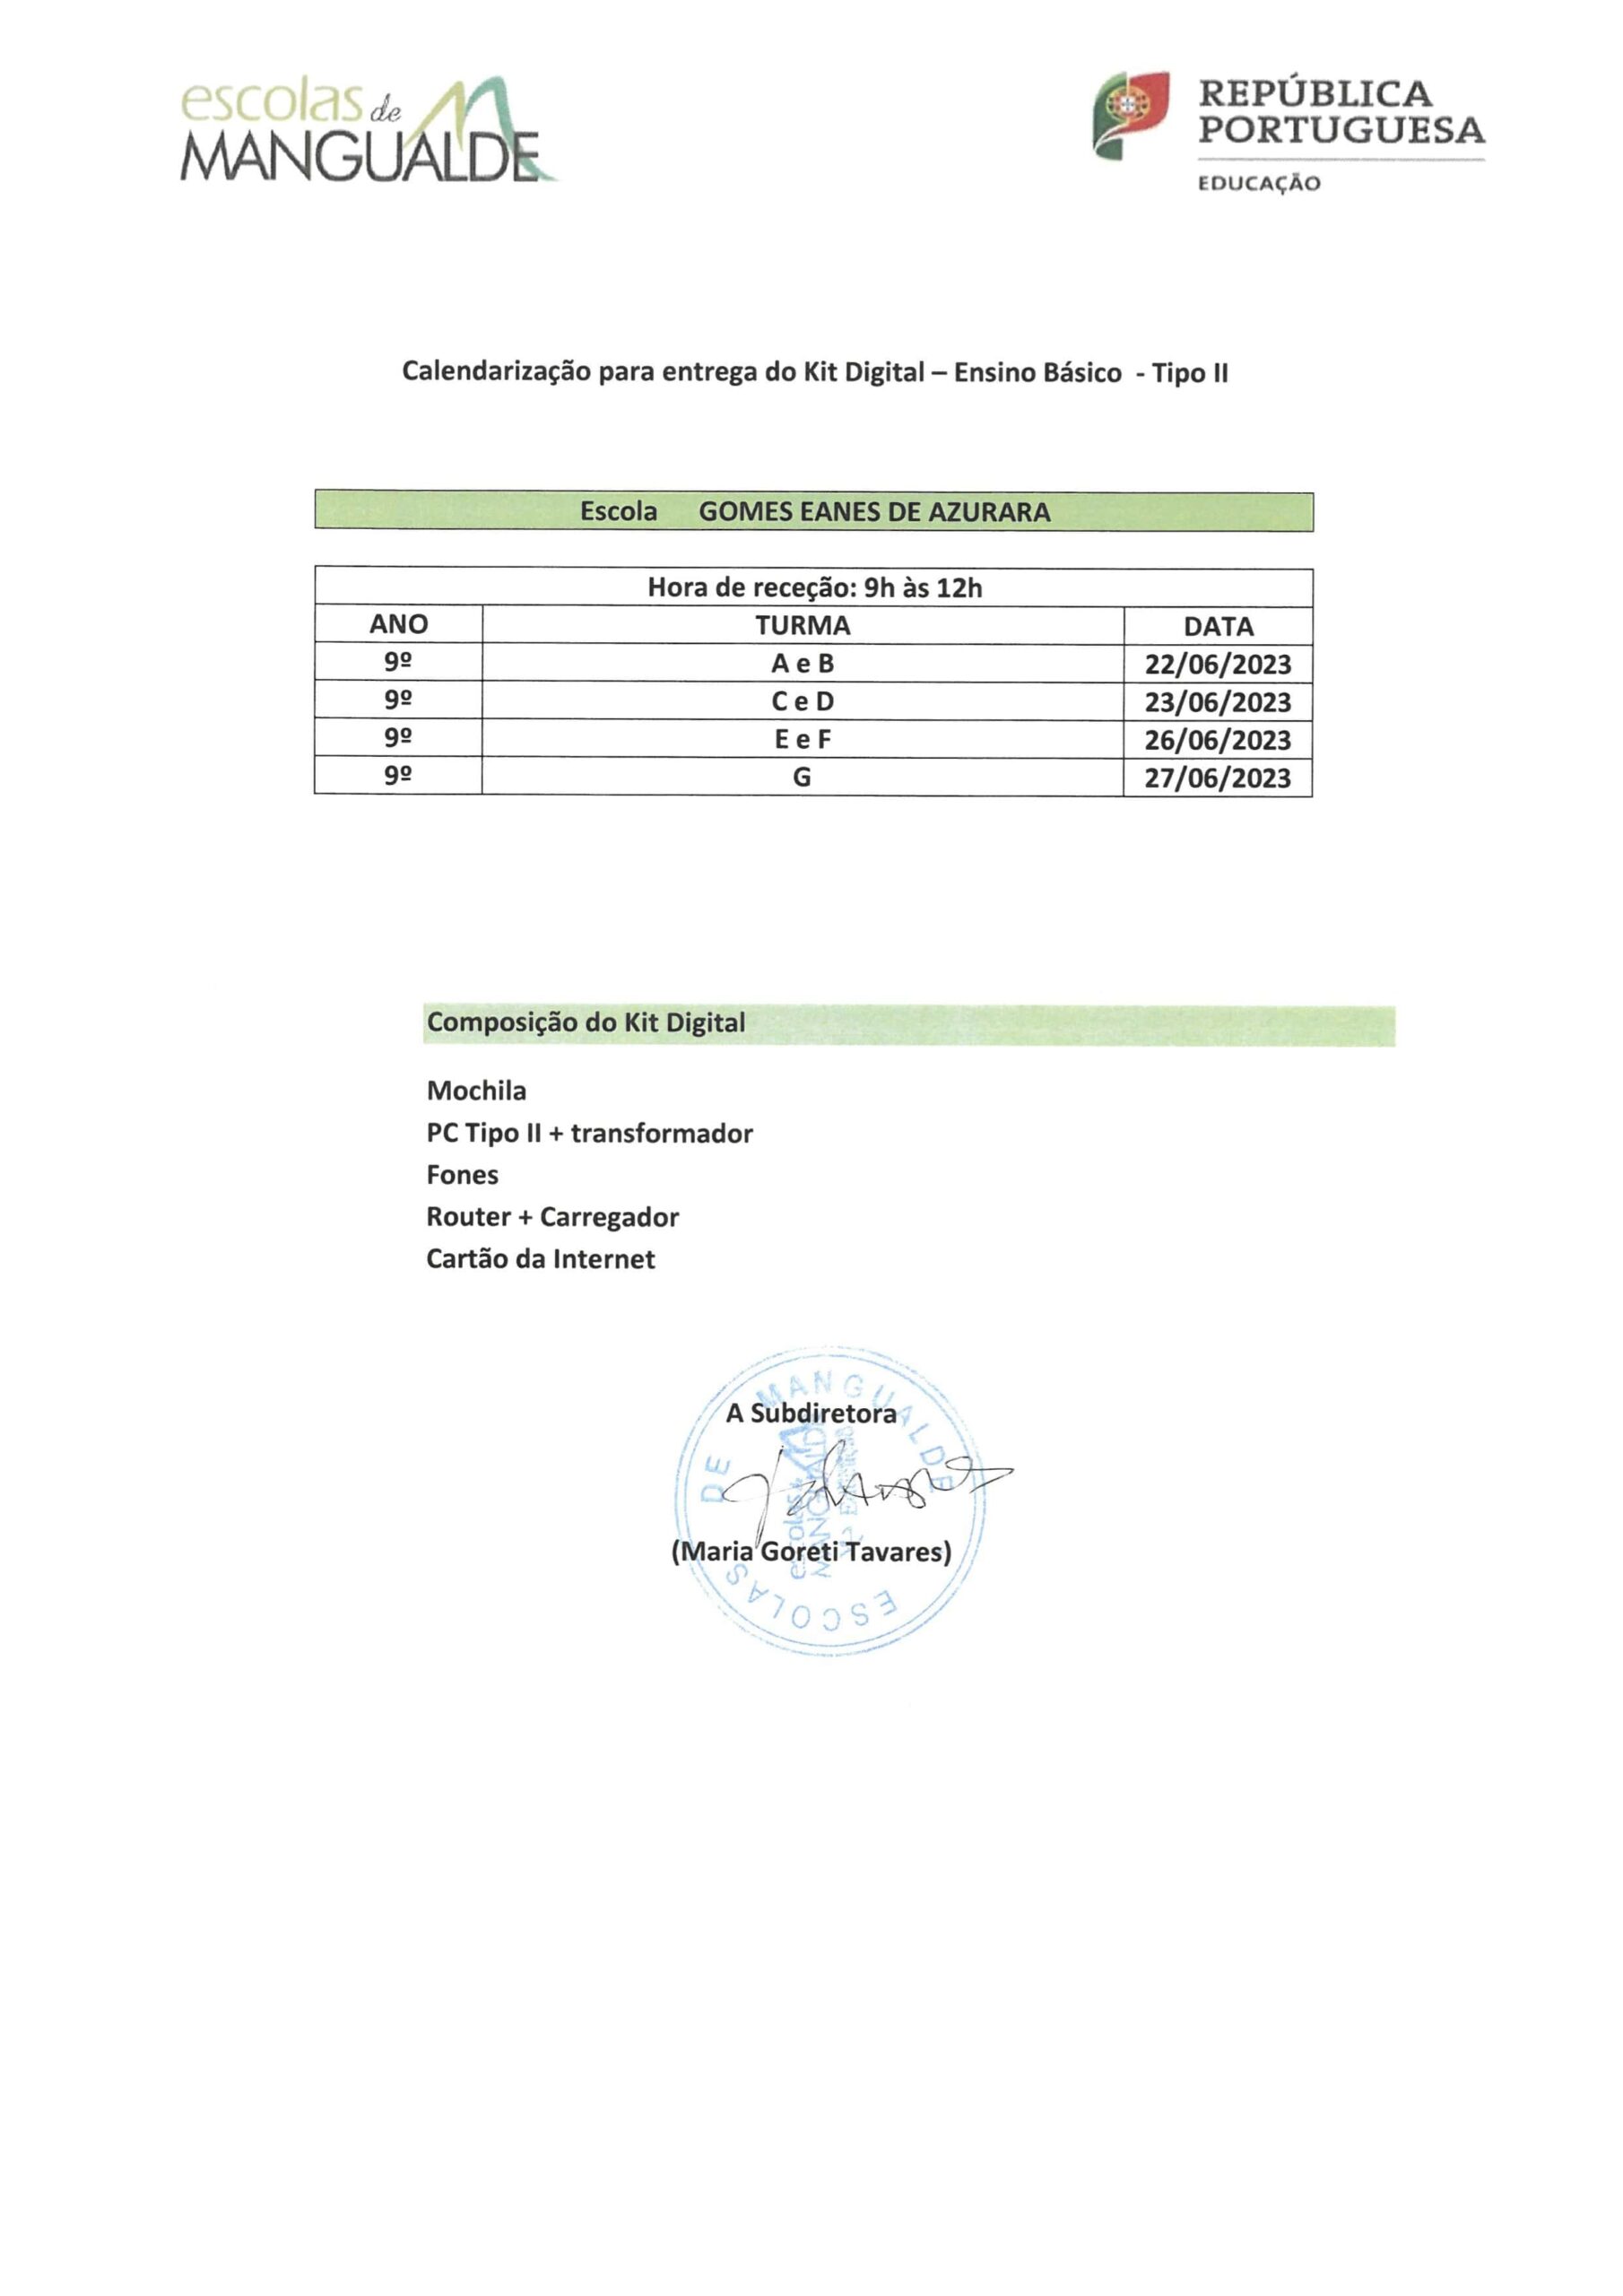 Calendarização da entrega do Kit Digital – Ensino Básico – Tipo II na Escola Gomes Eanes de Azurara